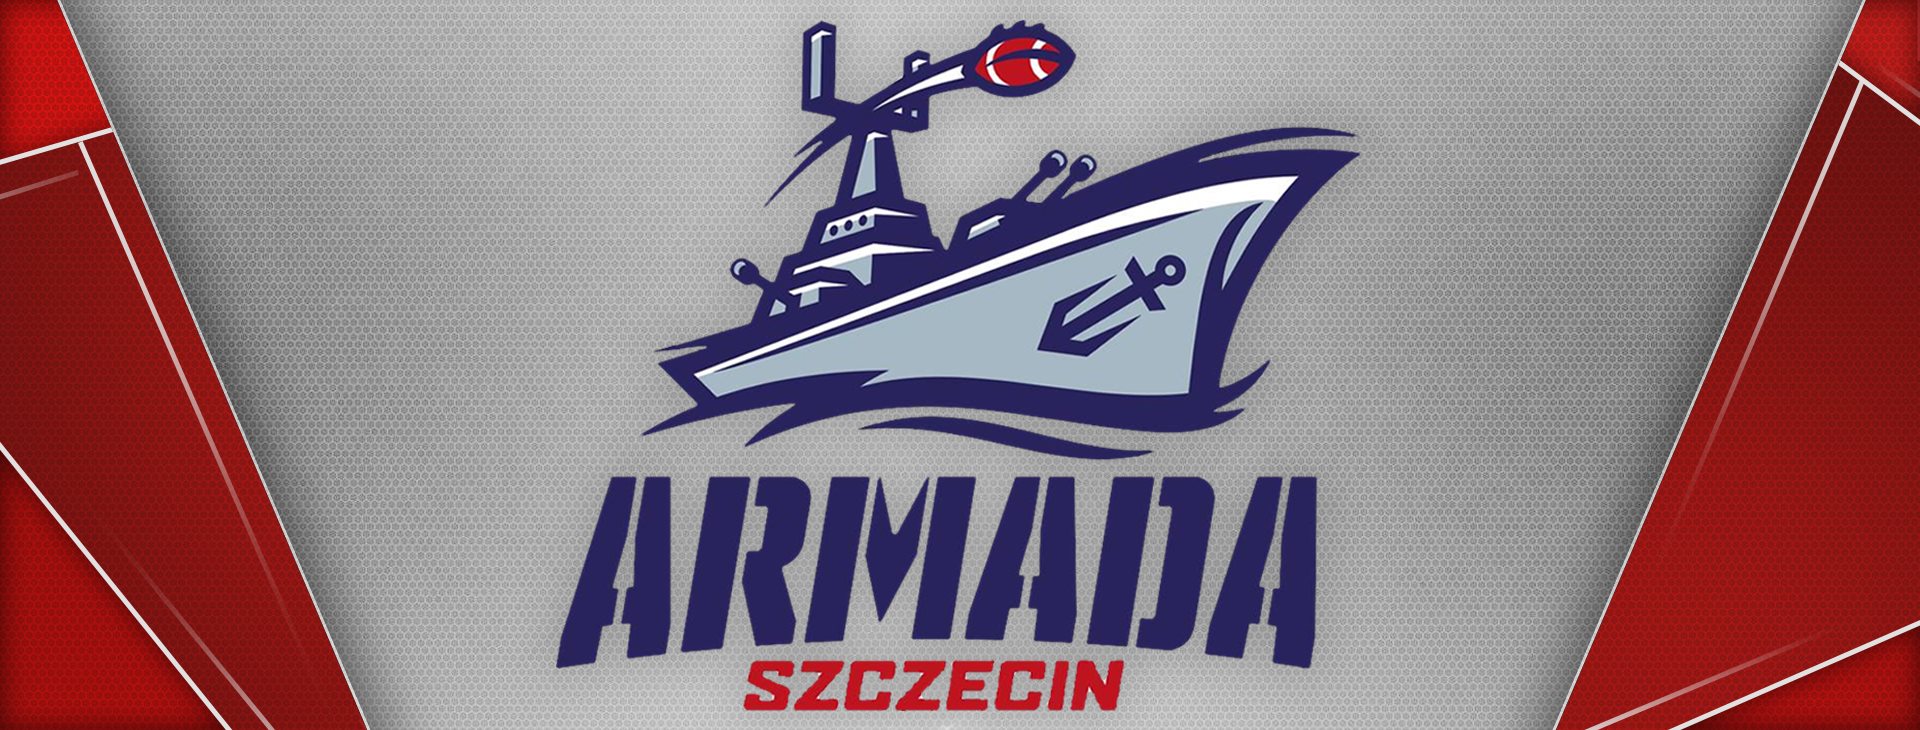 Zawodnicy Armada Szczecin wręczą medale podczas Szczecińskiego Festiwalu Biegowego